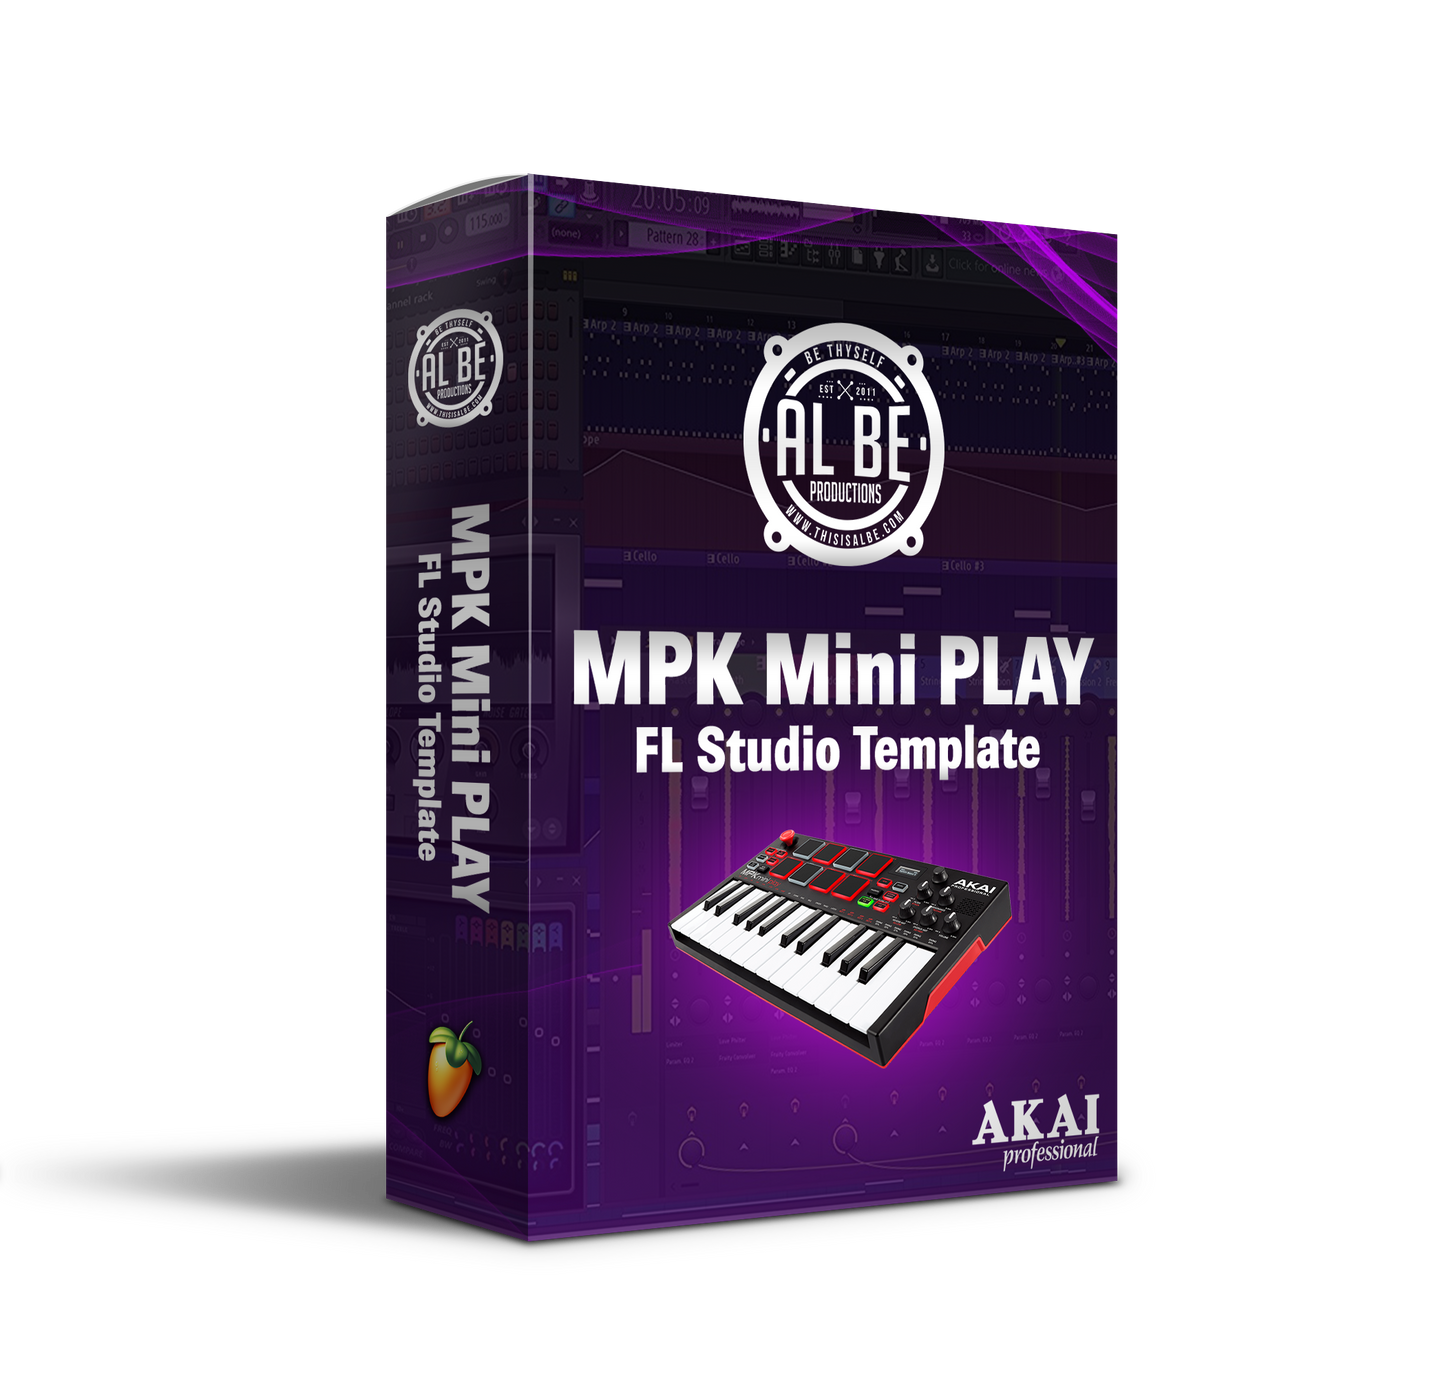 MPK Mini Play FL Studio Template